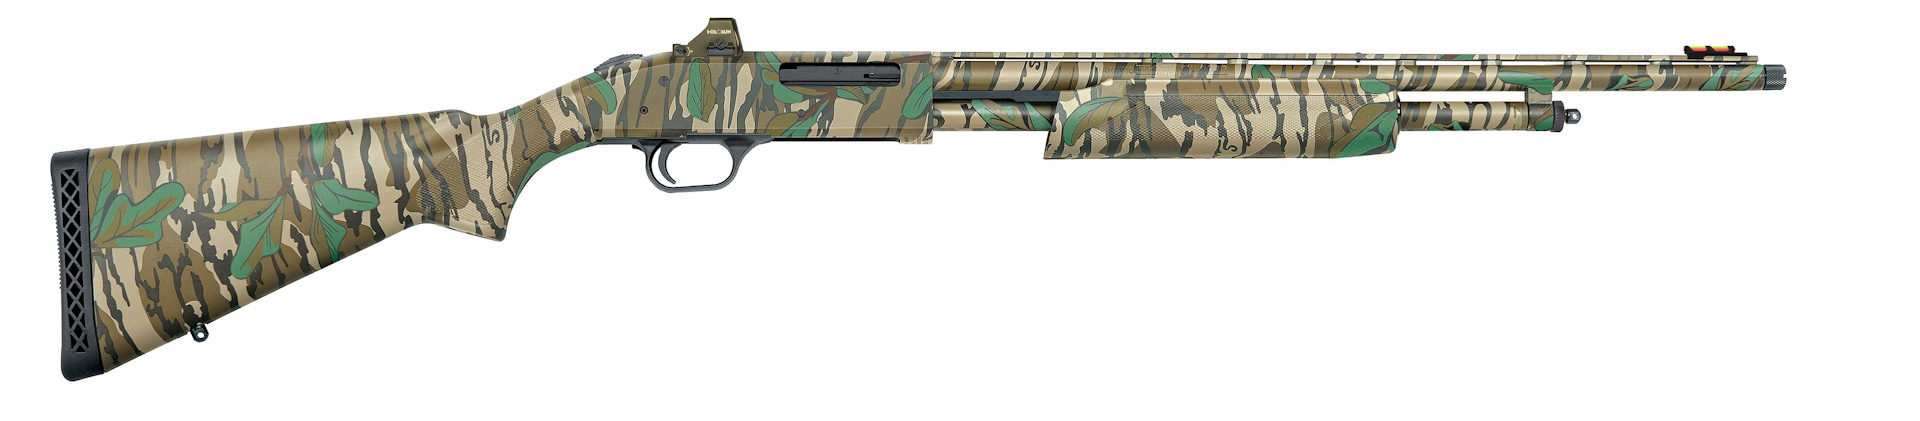 NEW Optic-Ready Holosun Combo Mossberg 500 & 835 Turkey Guns